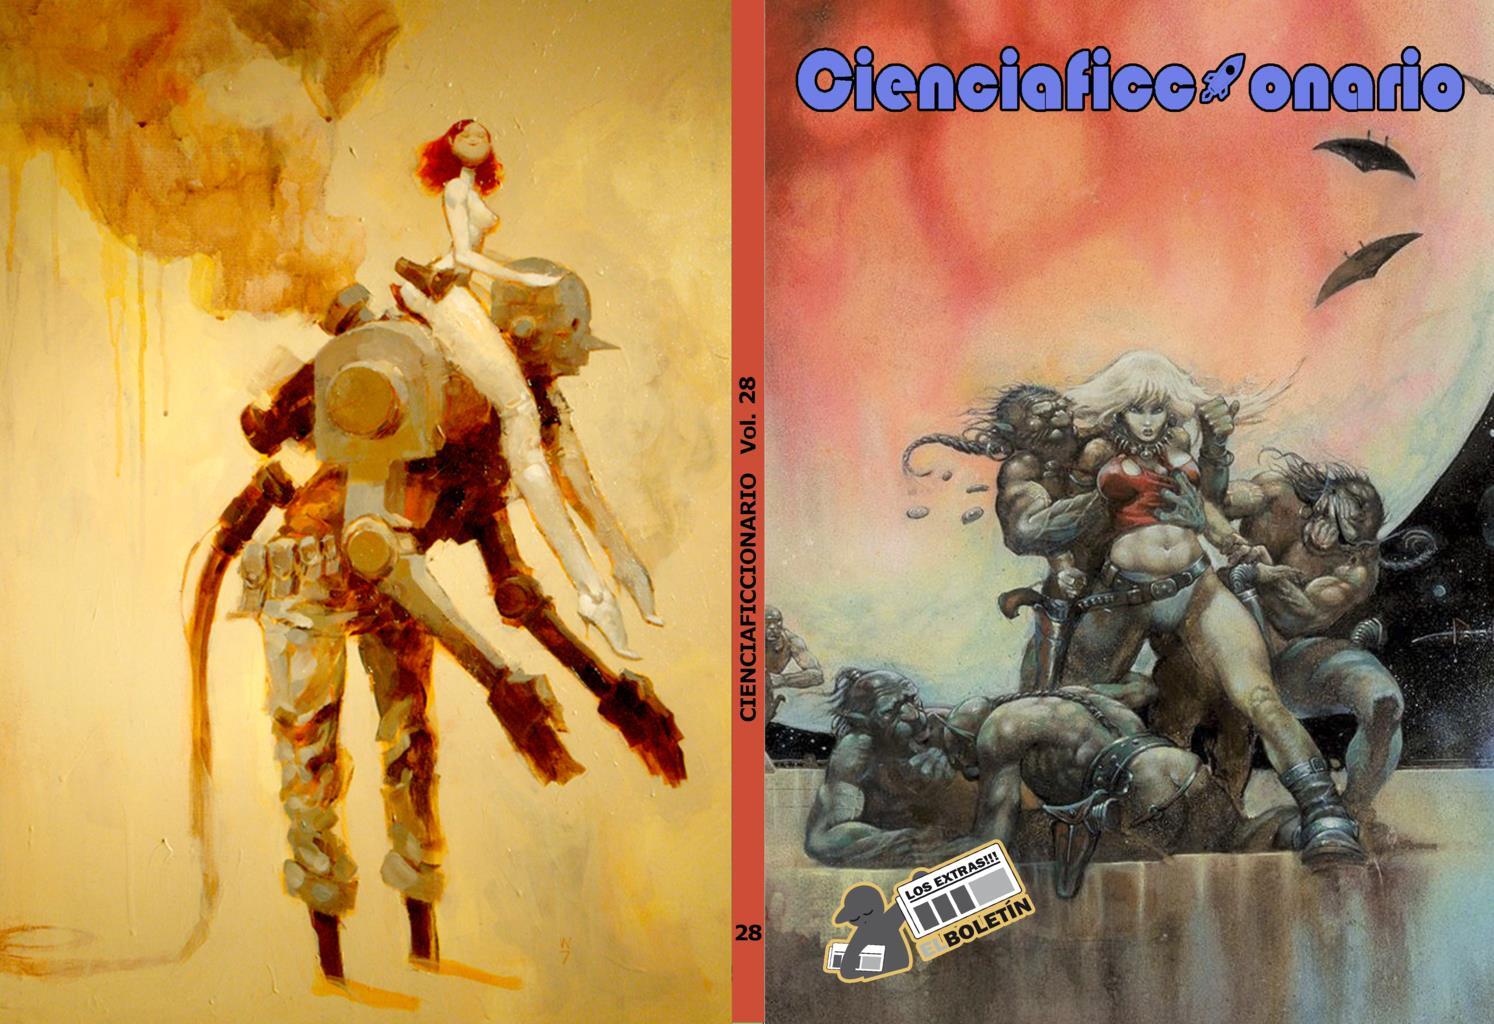 Ciencia ficcionario volumen 28: Diccionario CF en el comic: Glosario de la CF-Star Lord